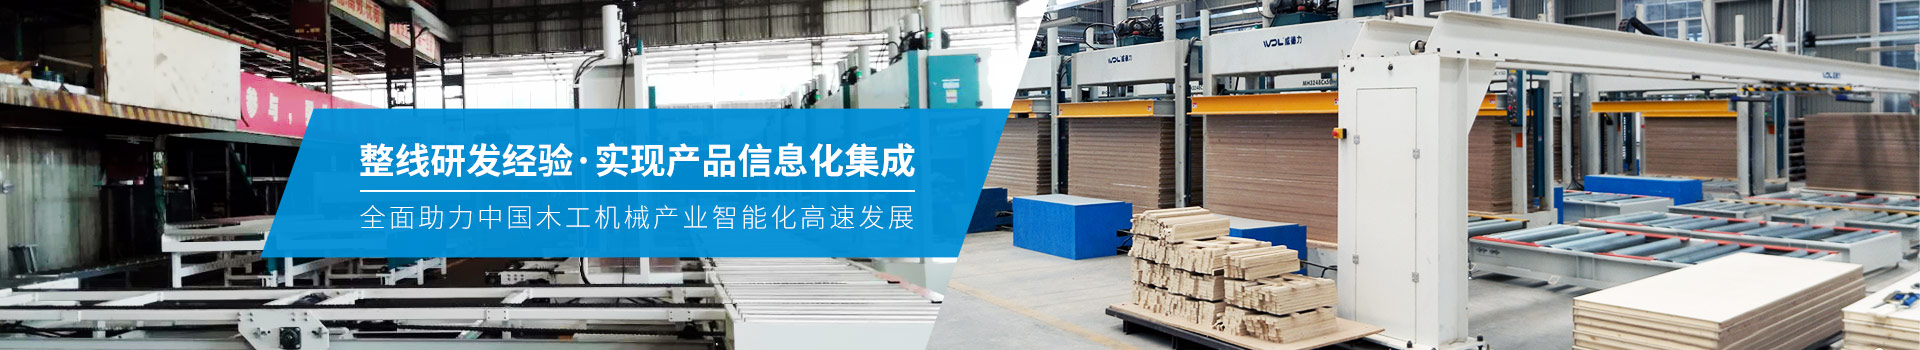 威德力-全面助力中國木工機械產業智能化高速發展